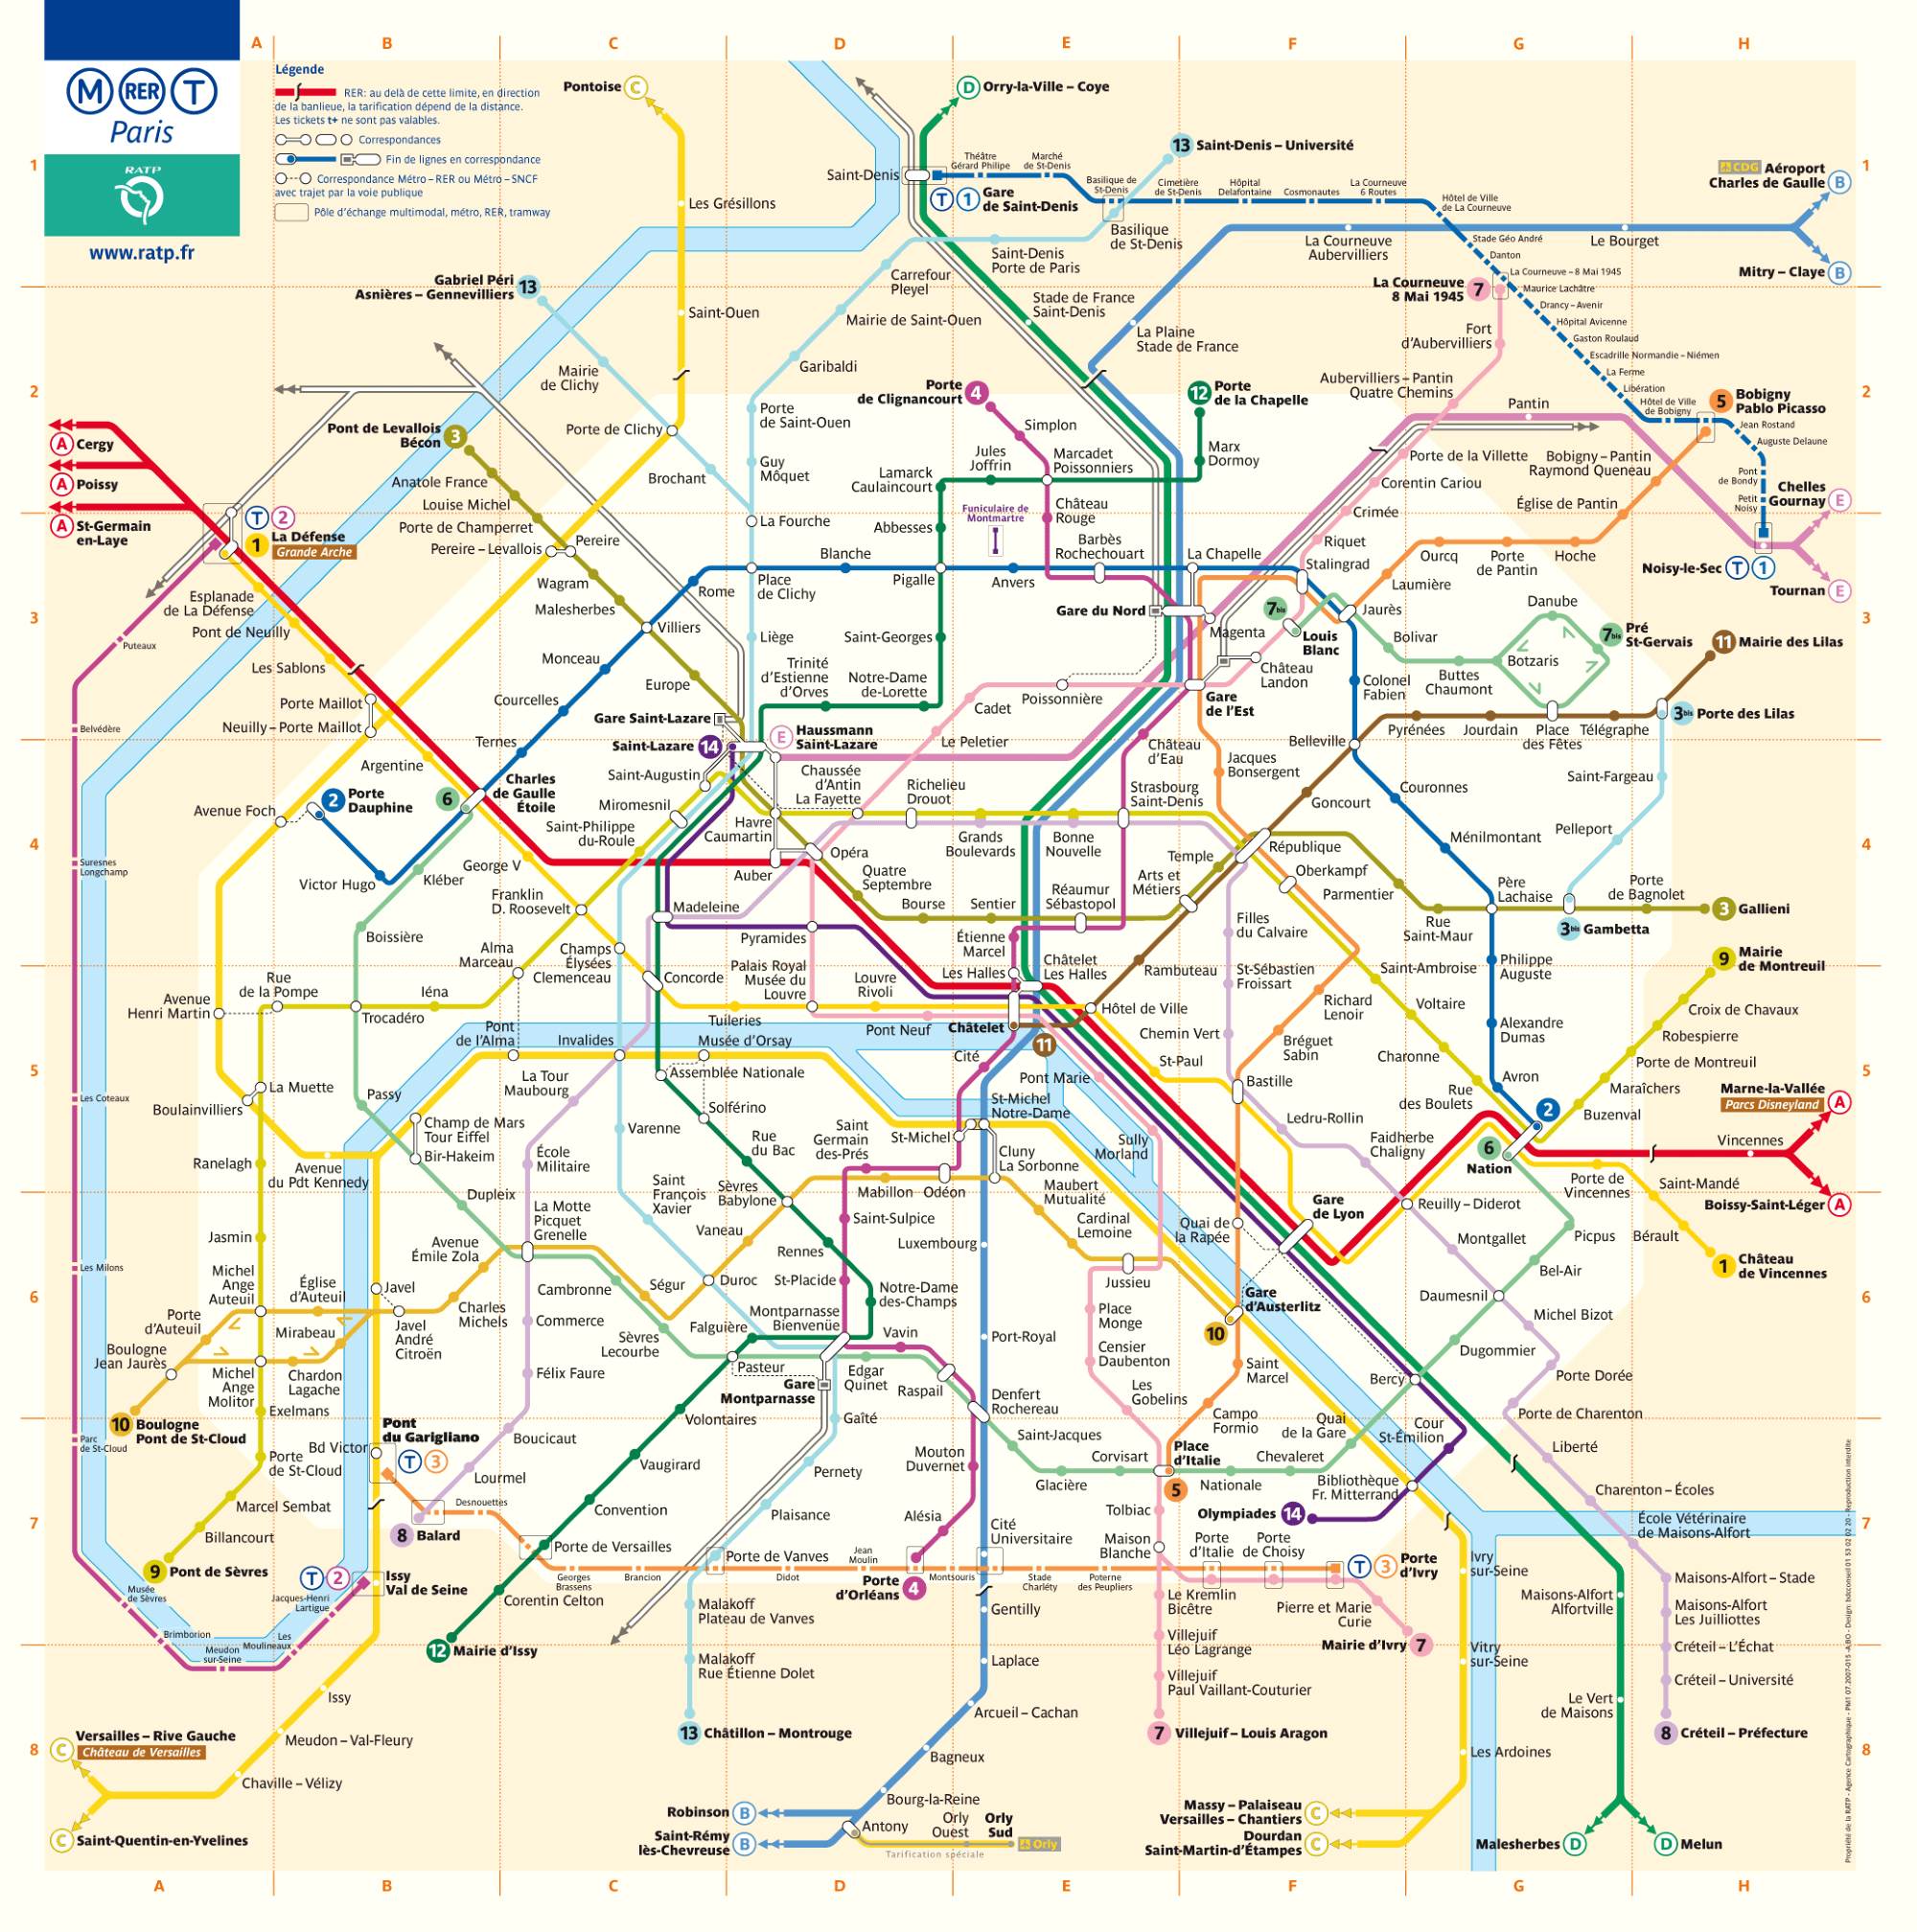 Схема метро Парижа на карте